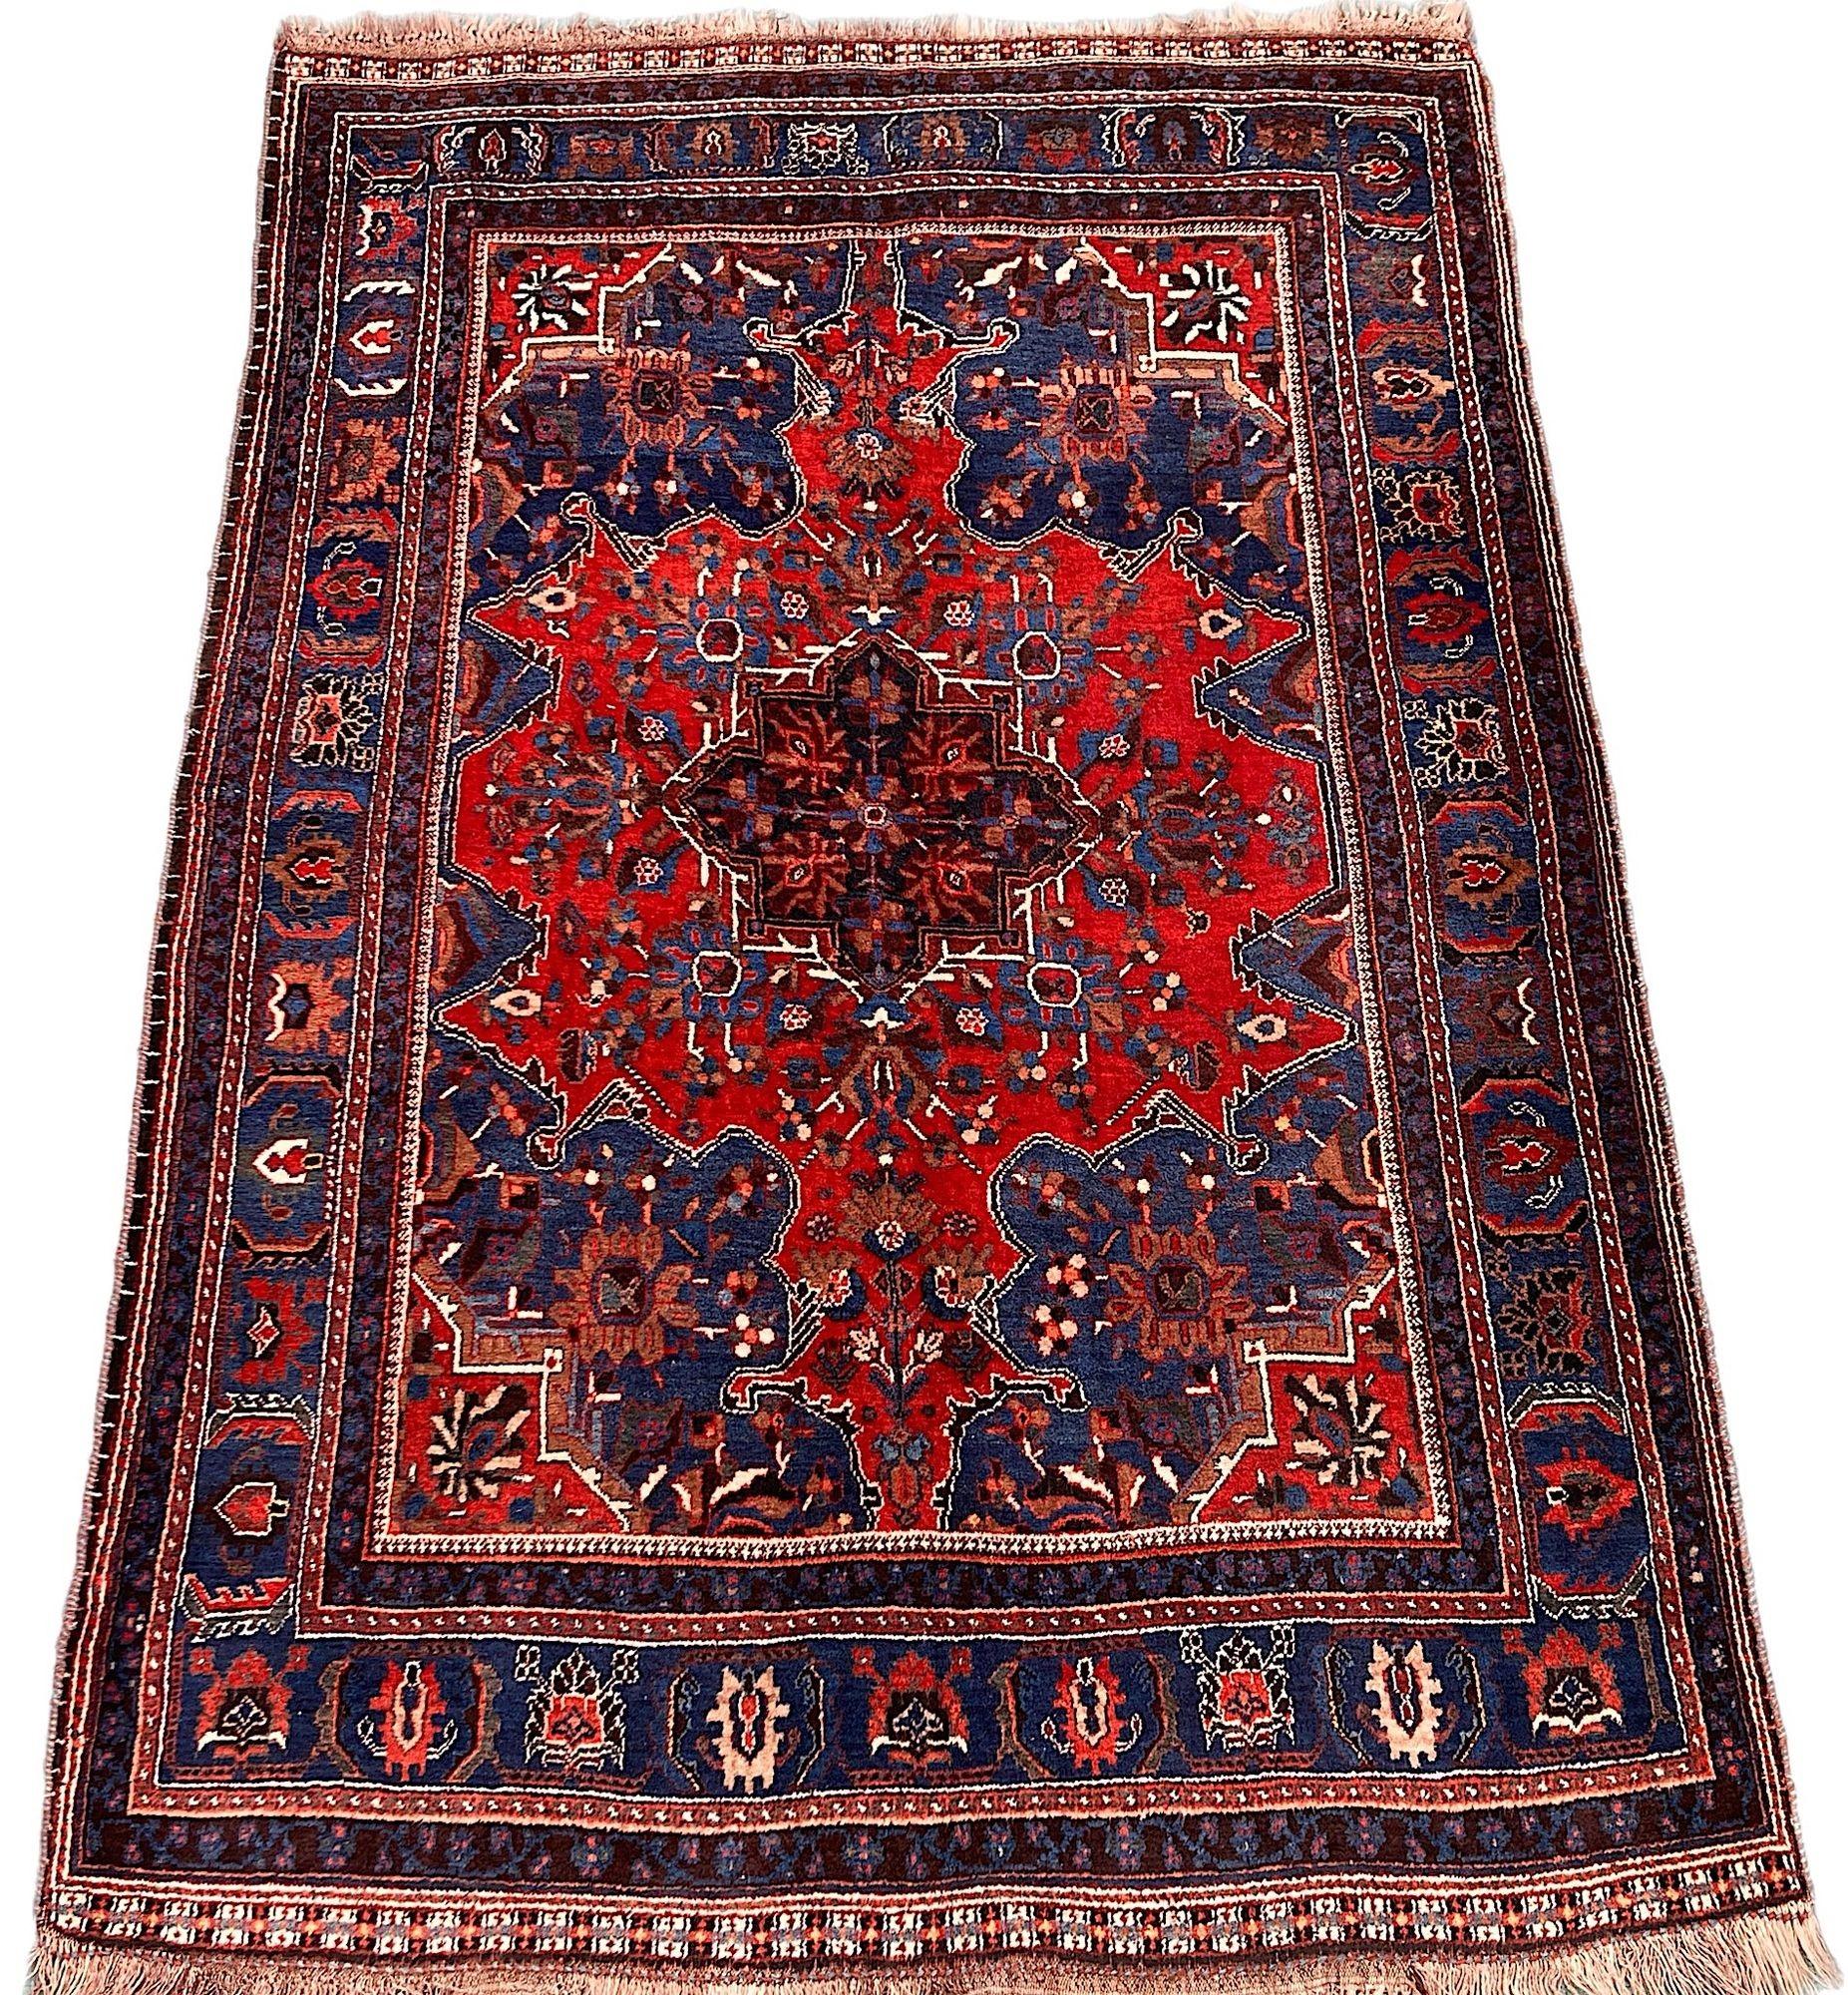 Ein wunderschöner antiker Gaschgai-Teppich, handgewebt von dem gleichnamigen Nomadenstamm um 1910. Der Teppich zeichnet sich durch ein ungewöhnliches kurvenförmiges Muster auf einem reichen Terrakotta-Feld und einer tiefblauen Bordüre aus. Fein